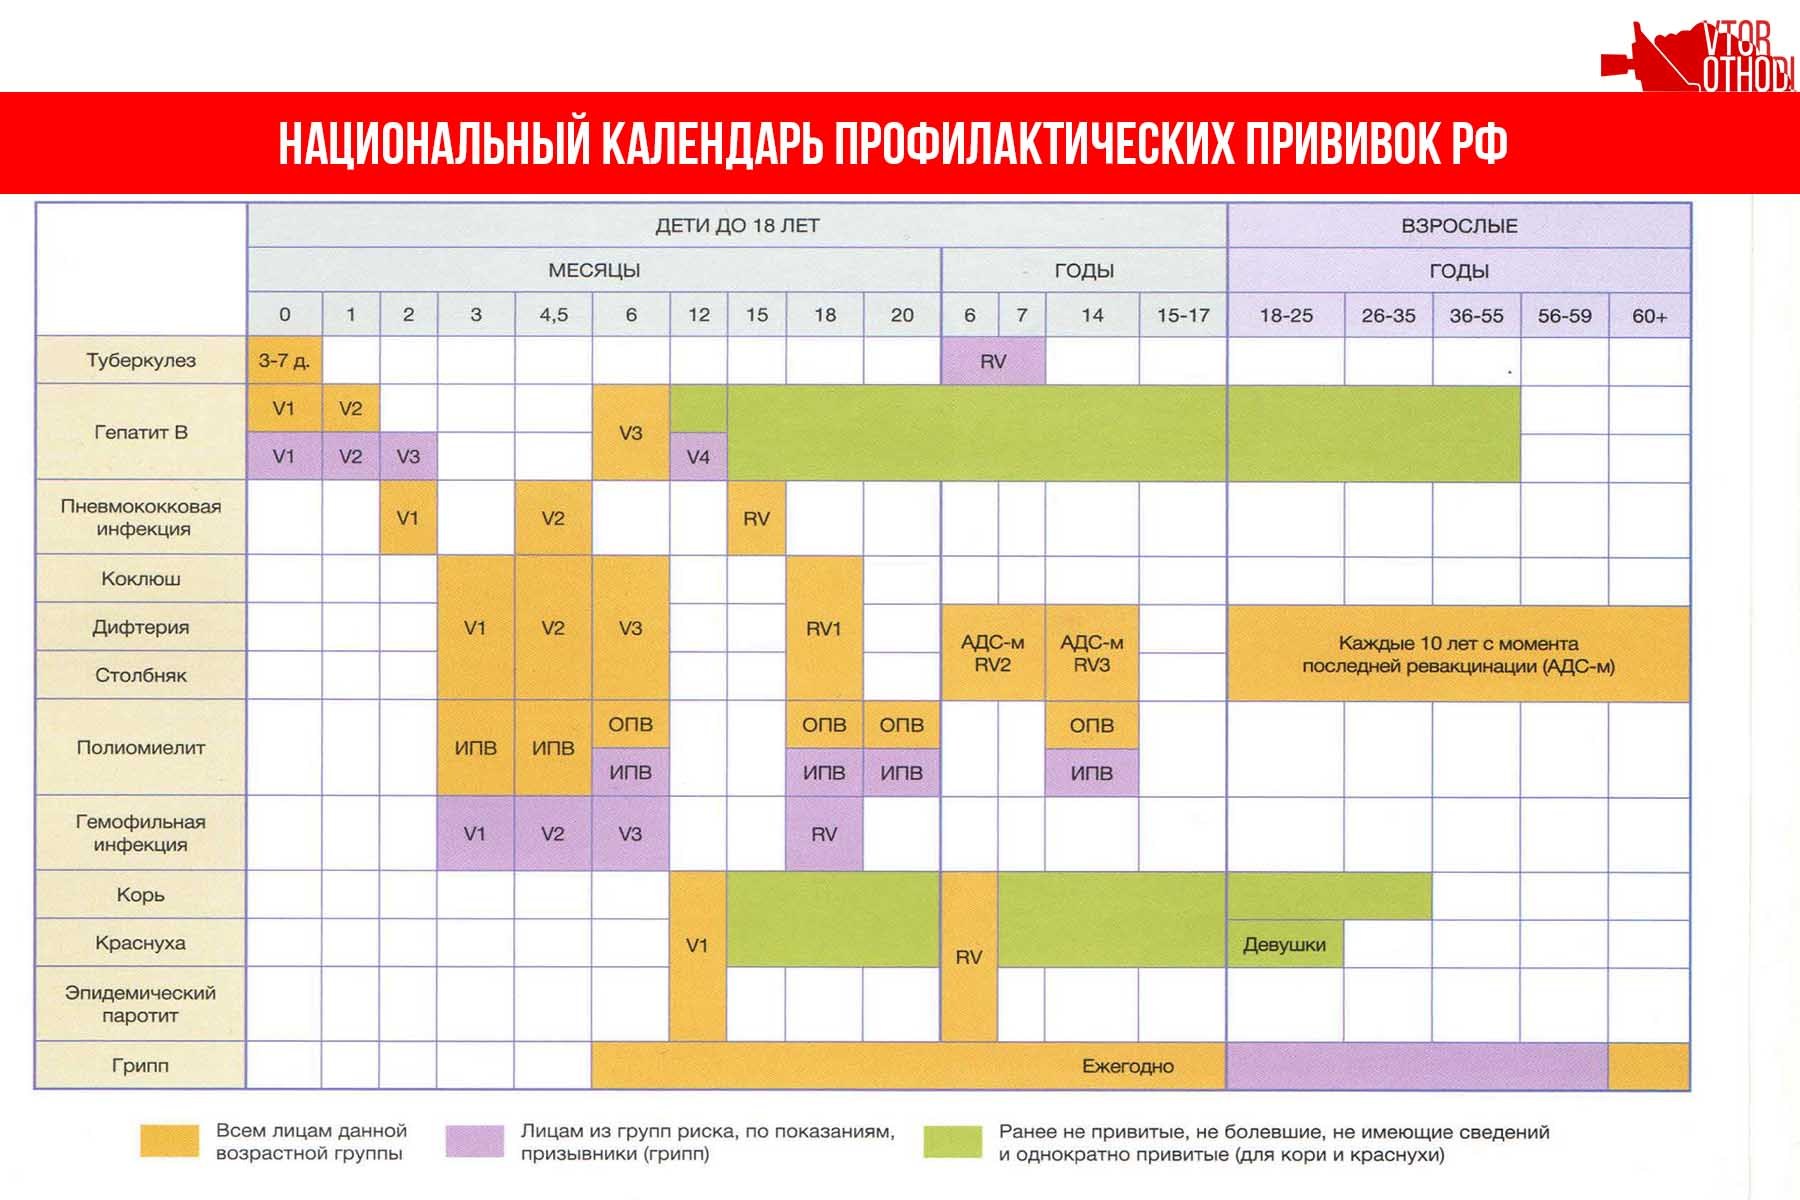 Вакцина в 1 год. Краснуха национальный календарь прививок. Эпидемический паротит национальный календарь прививок. Национальный календарь прививок для детей до 1 года в России. Календарь прививок для детей в России 2021 национальный календарь.